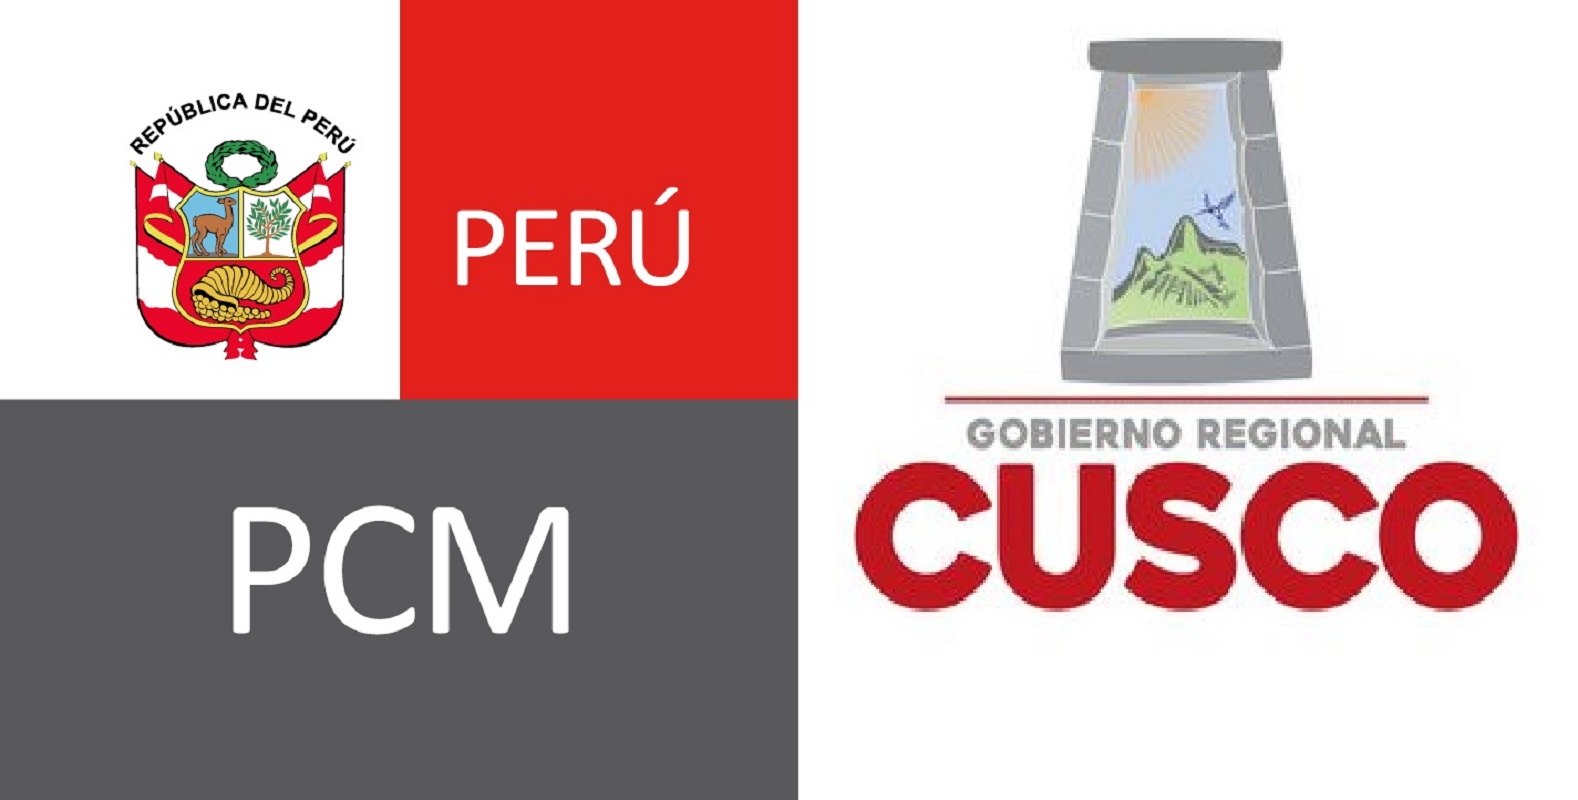 Poder ejecutivo realiza el VI Consejo Descentralizado Cusco, trabajando la agenda de desarrollo de dicha región en el sur peruano.